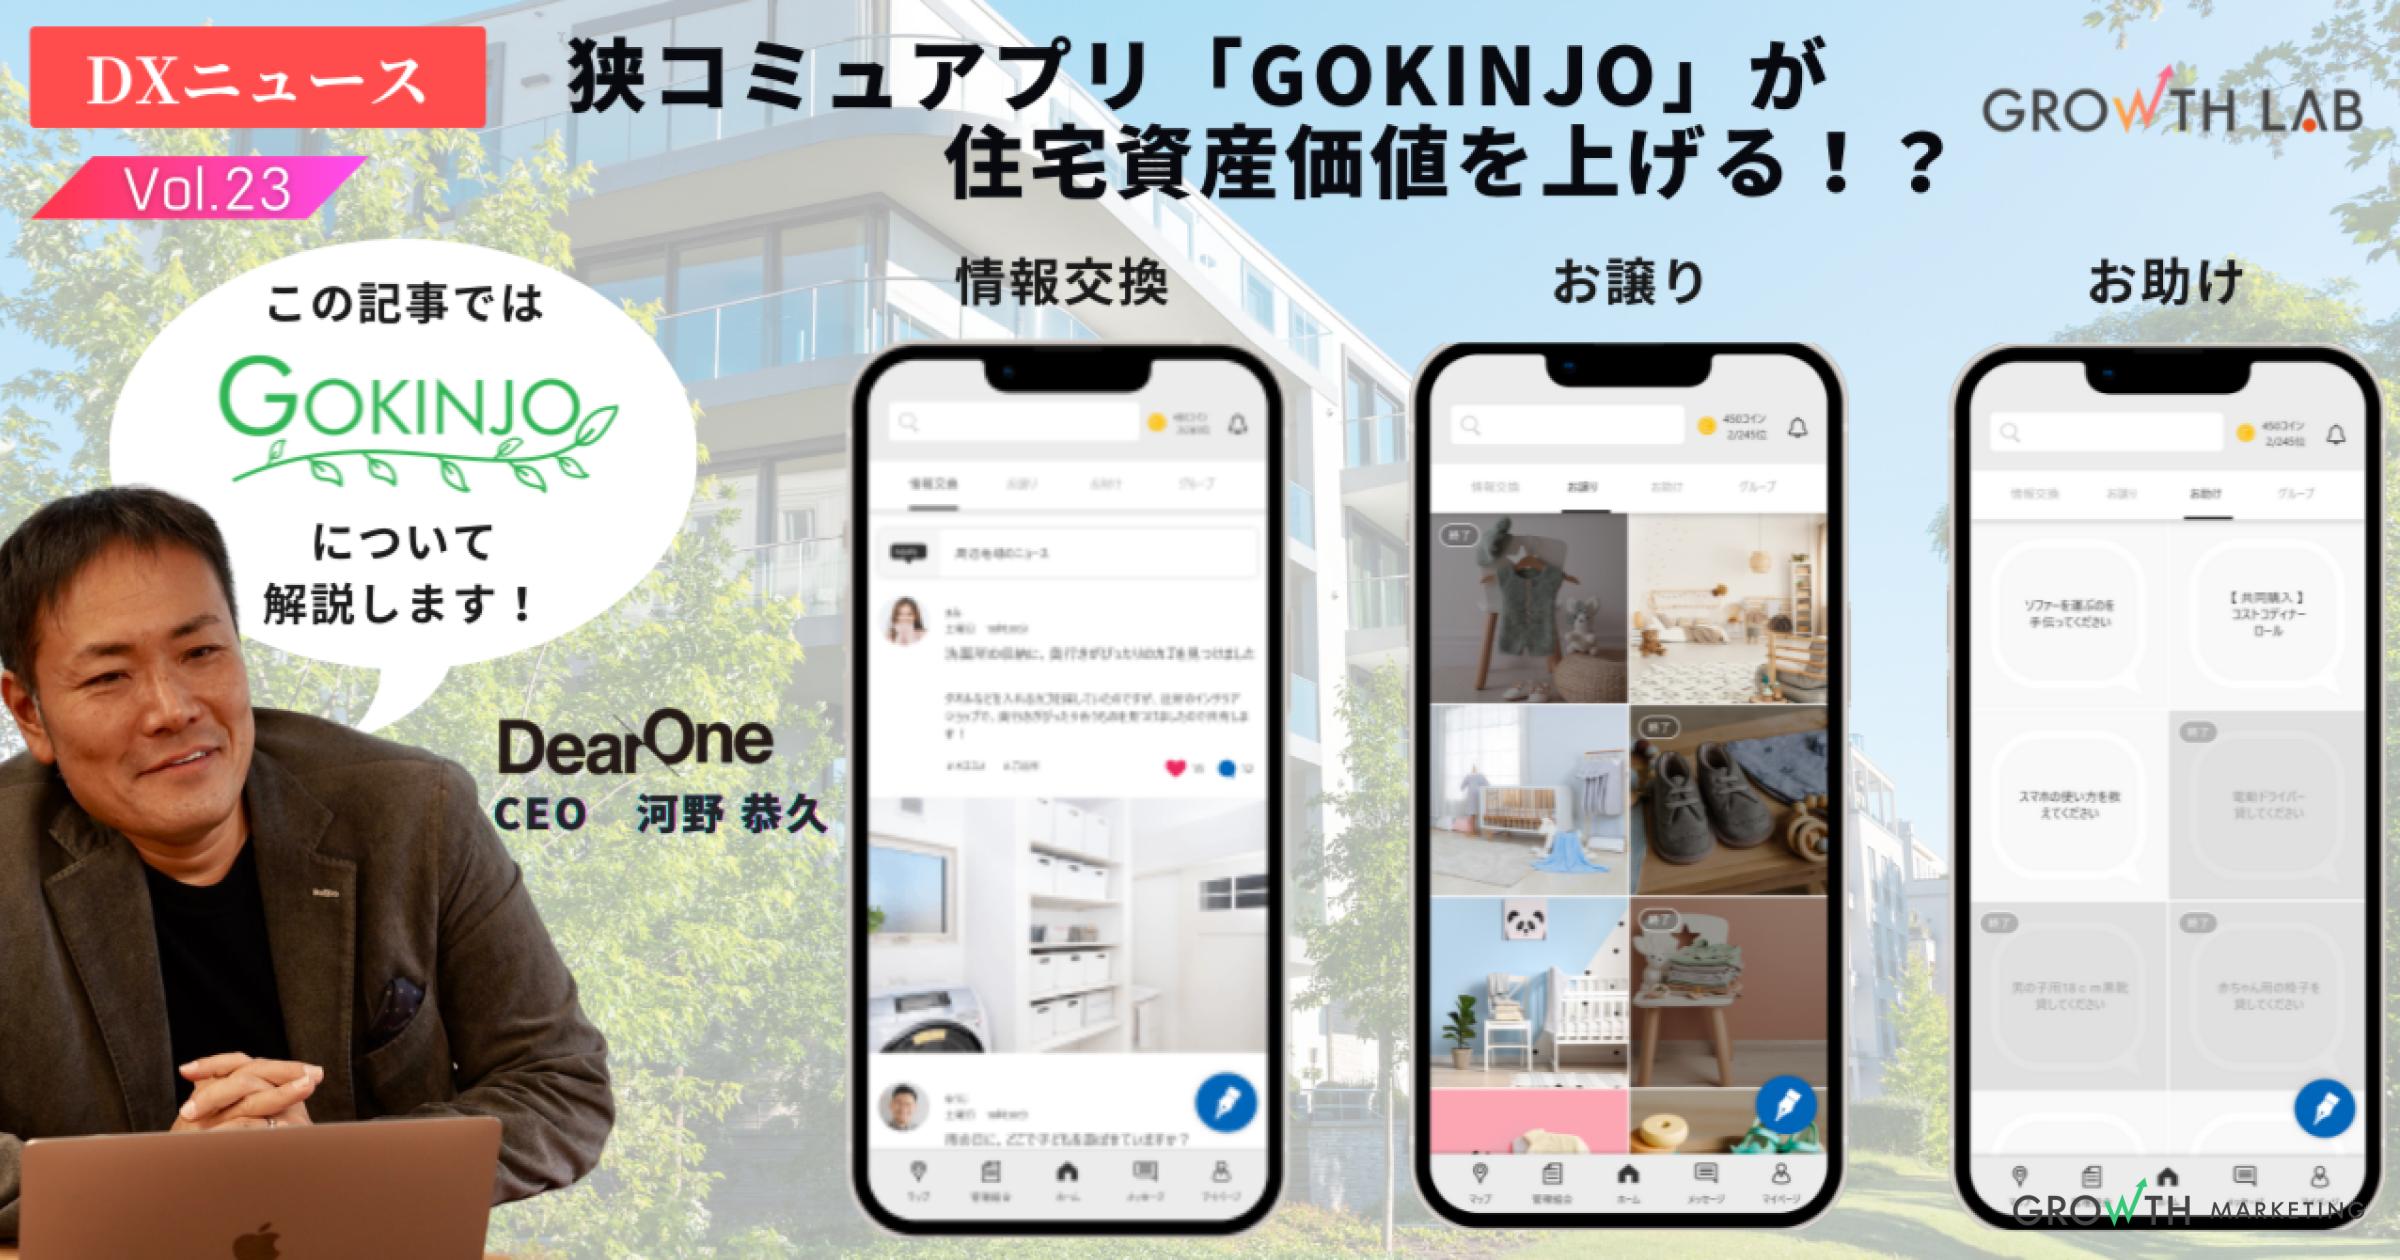 マンション入居者専用アプリ「GOKINJO」に注目！【DXニュース】vol.23